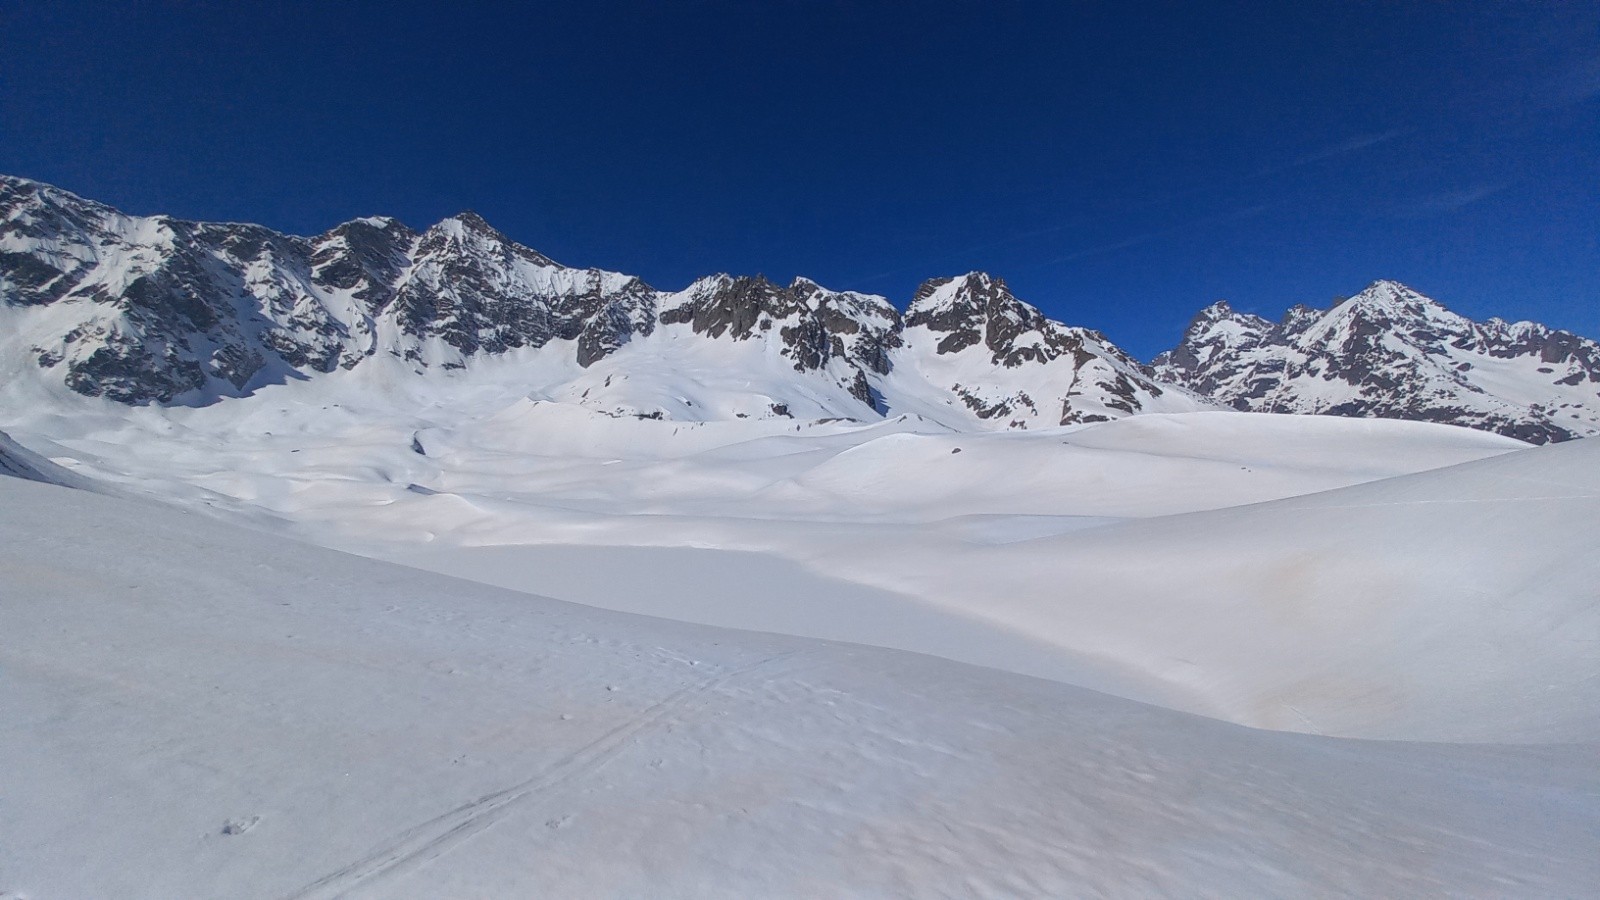  Au loin Pic de neige cordier, Pic d’Arsine, Pic du Dragon… devant le lac glacier d’Arsine